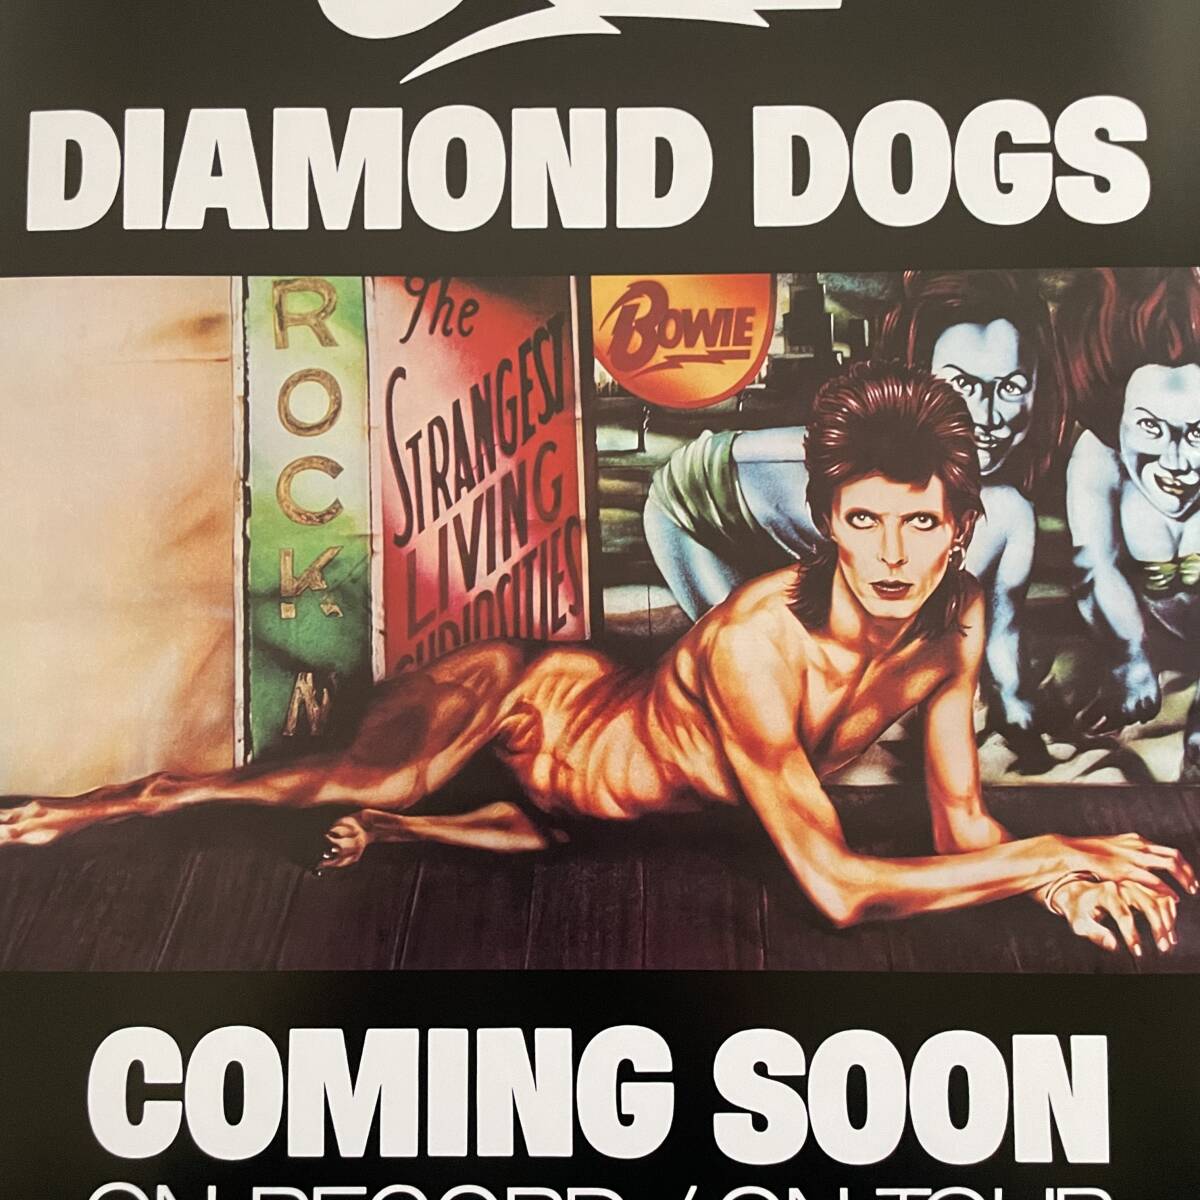  постер * David * bow i(David Bowie) 1974 [ бриллиант. собака ] продажа в это время промо постер копия *Diamond Dogs